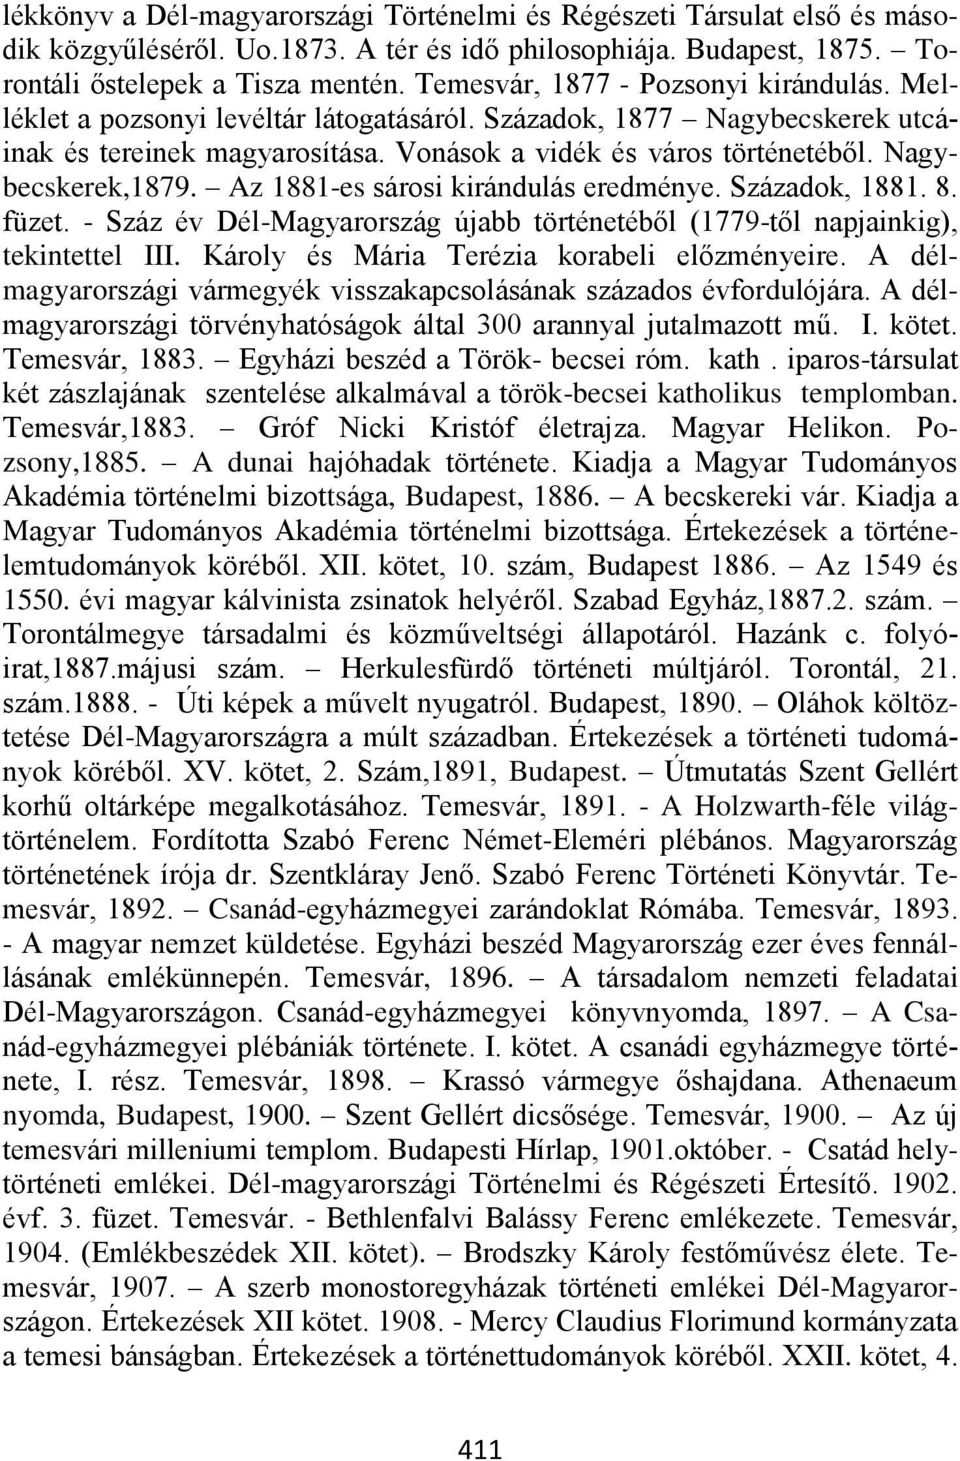 Nagybecskerek,1879. Az 1881-es sárosi kirándulás eredménye. Századok, 1881. 8. füzet. - Száz év Dél-Magyarország újabb történetéből (1779-től napjainkig), tekintettel III.